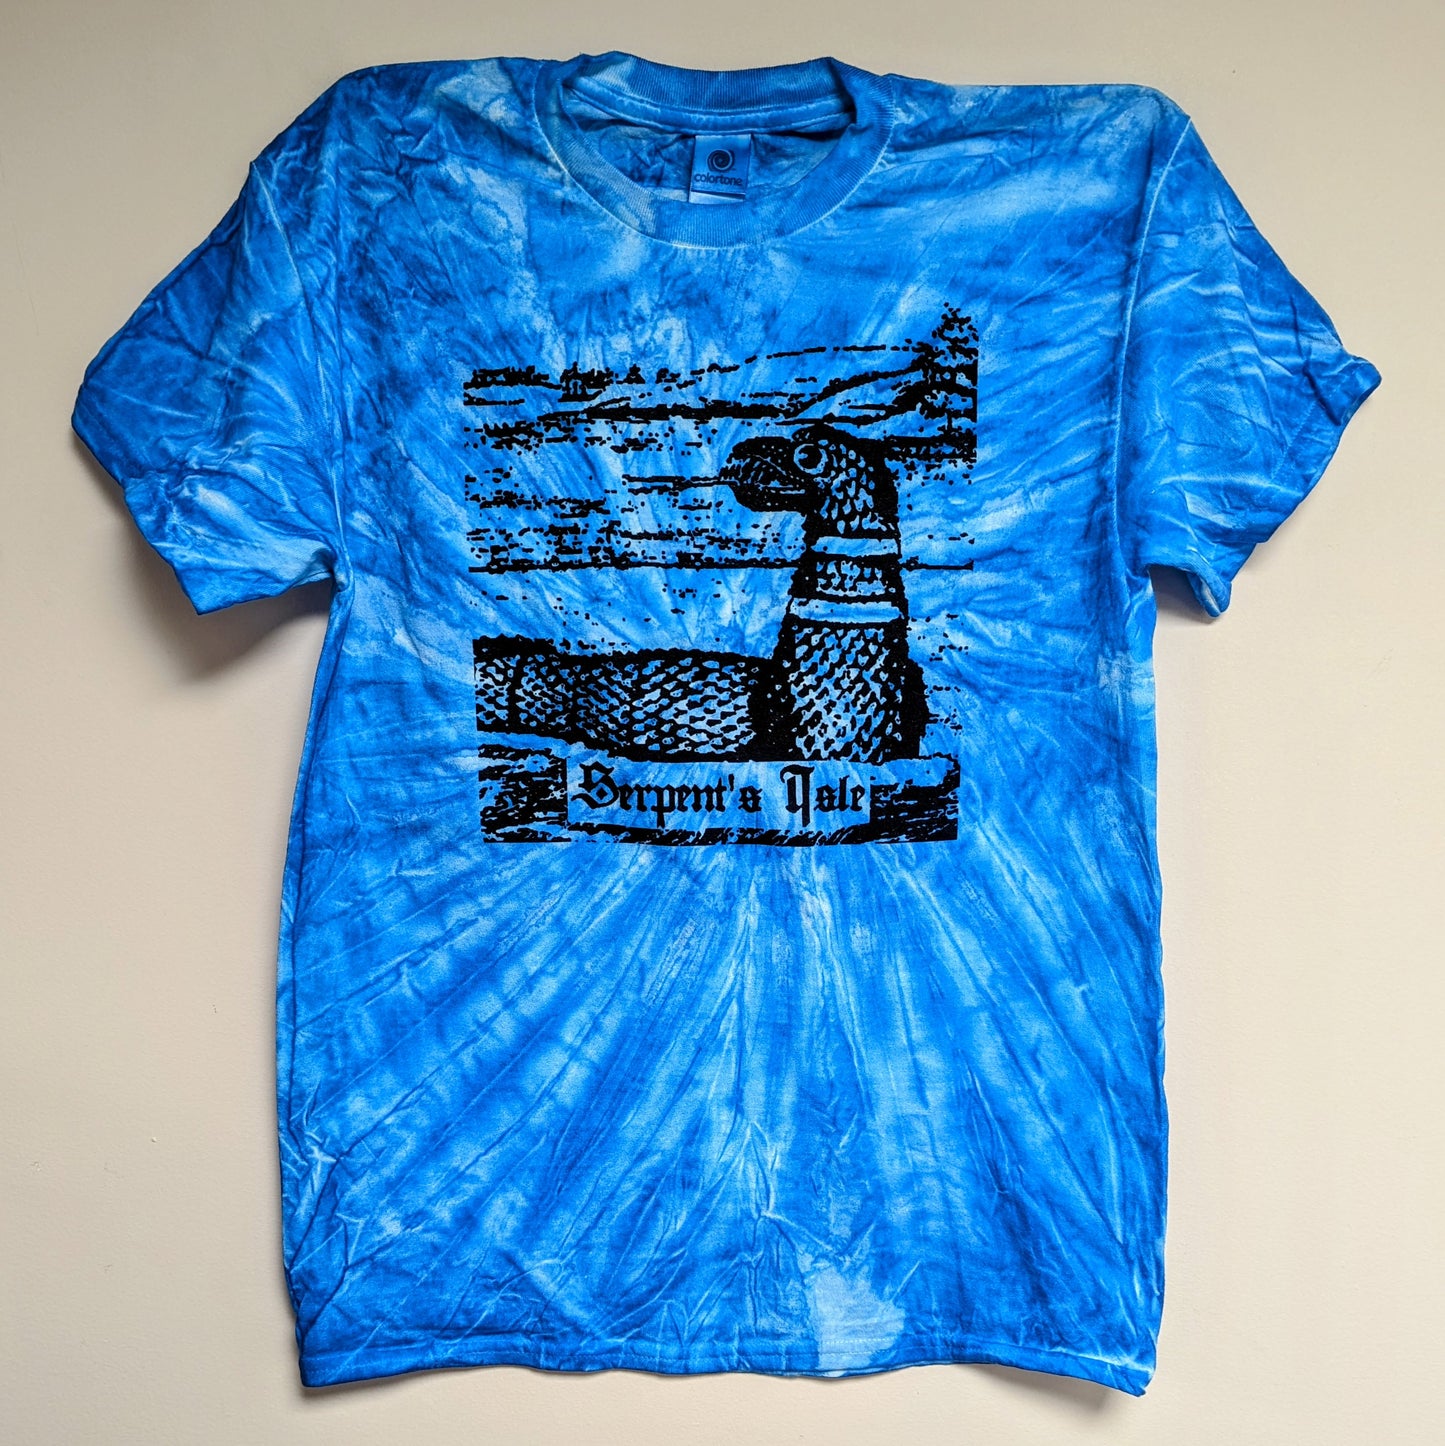 SERPENT'S ISLE "Tie Dye" 2-sided T-Shirt